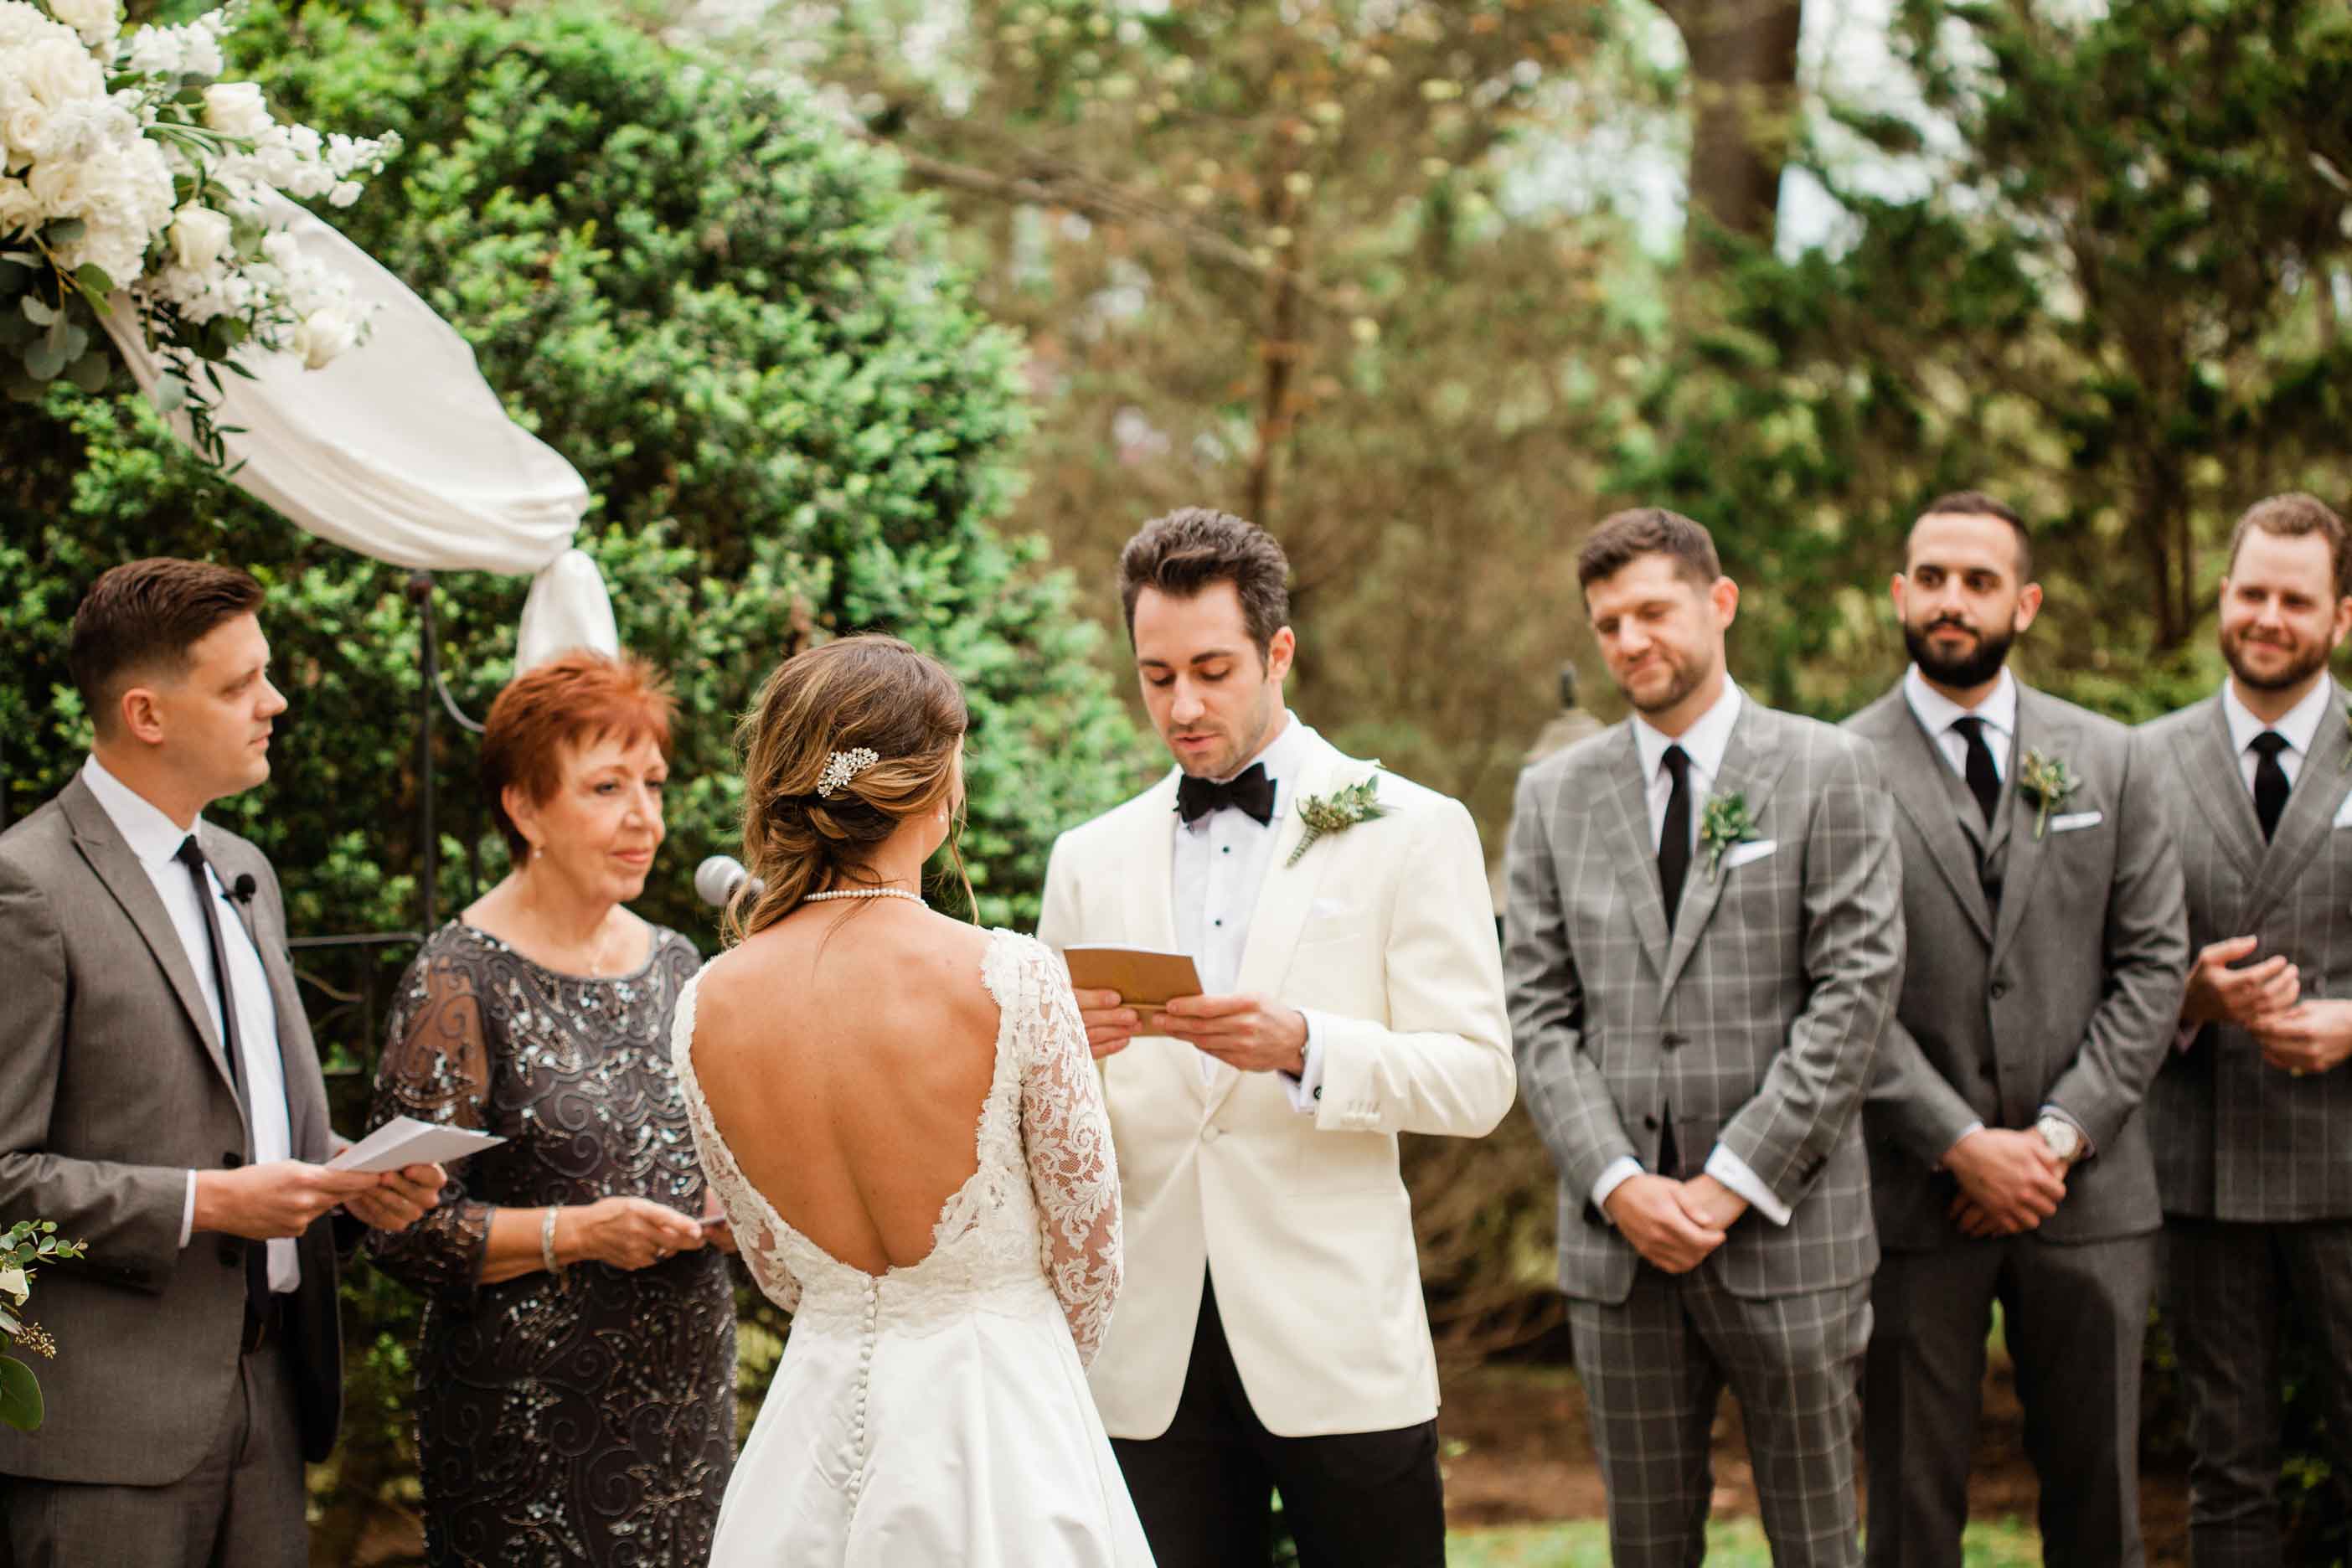 vows, altar, wedding party, officiant, garden wedding